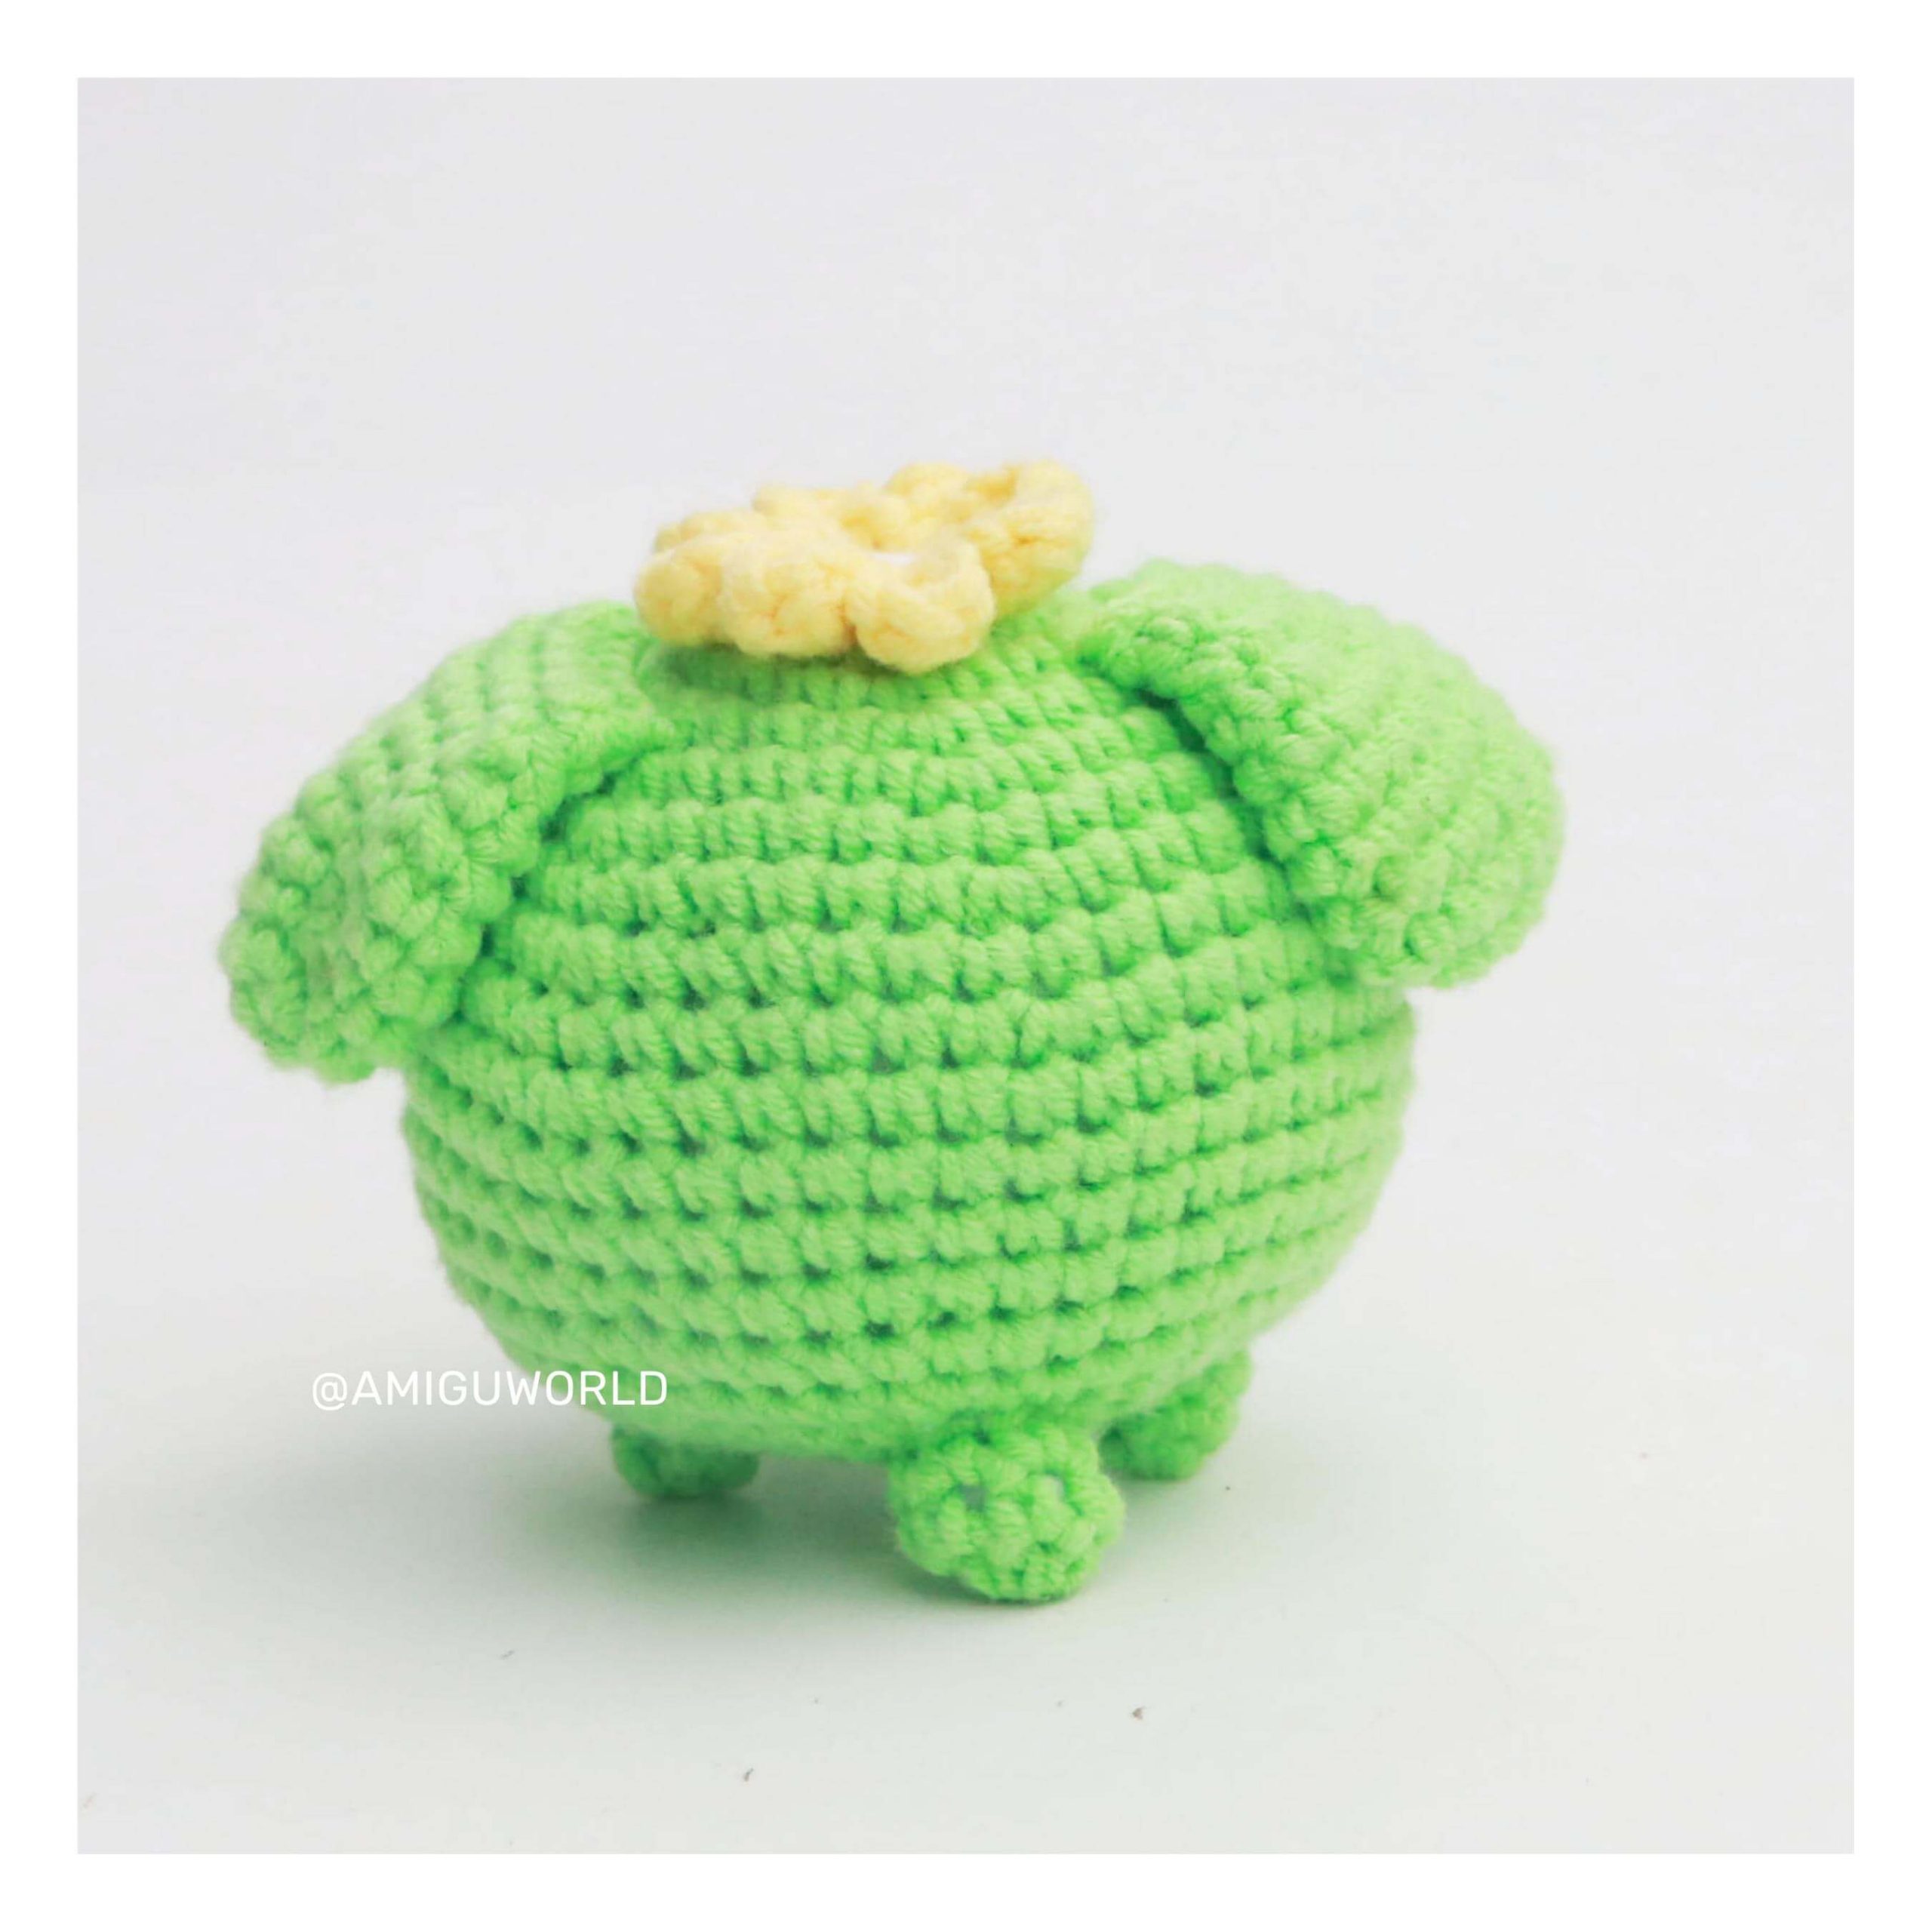 popocco-amigurumi-crochet-pattern-amiguworld (11)